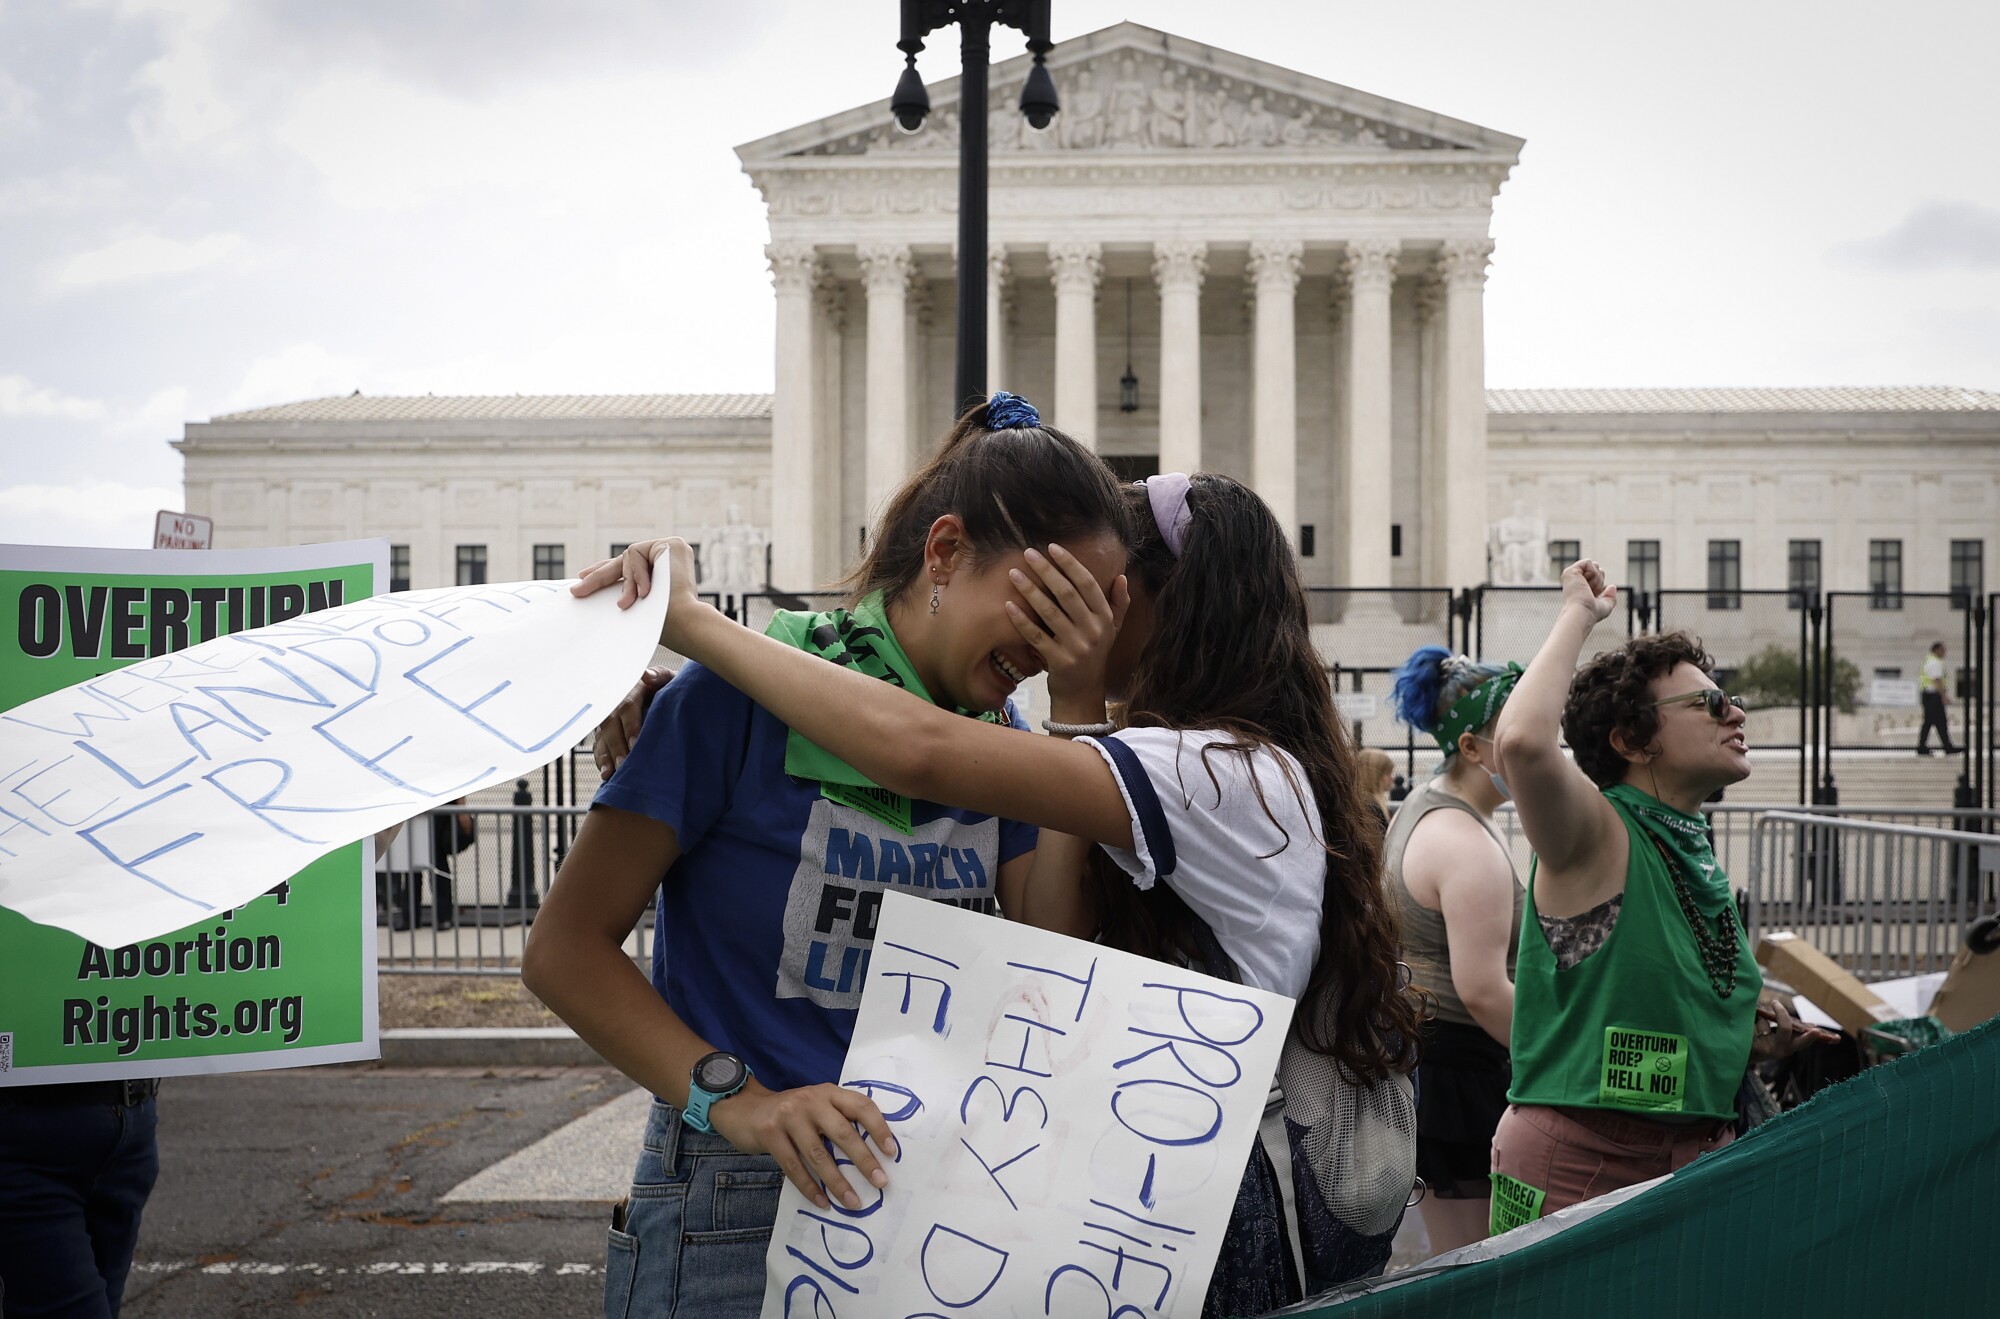 Kürtaj hakları aktivistleri Washington DC'deki ABD Yüksek Mahkemesi önünde tepki gösterdi.